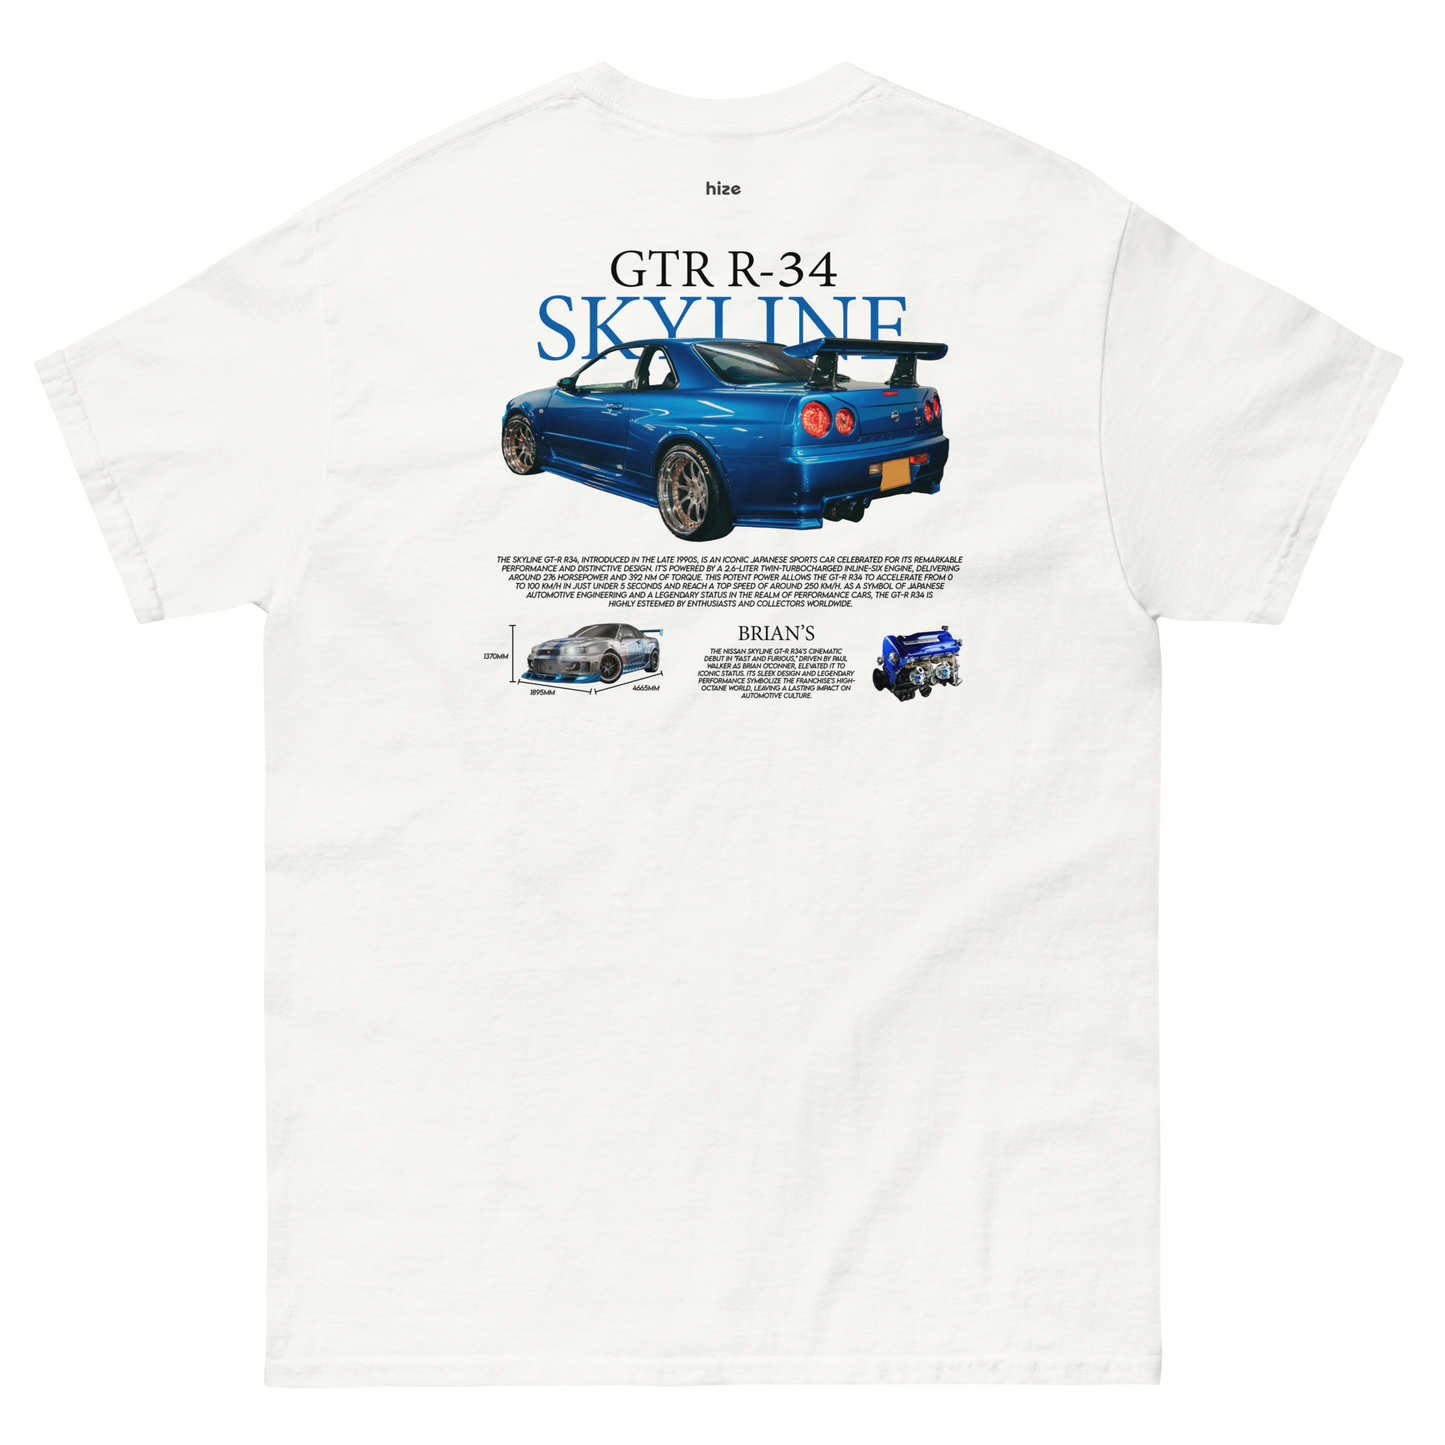 Nissan GTR R-34 SKYLINE T-shirt - White Back